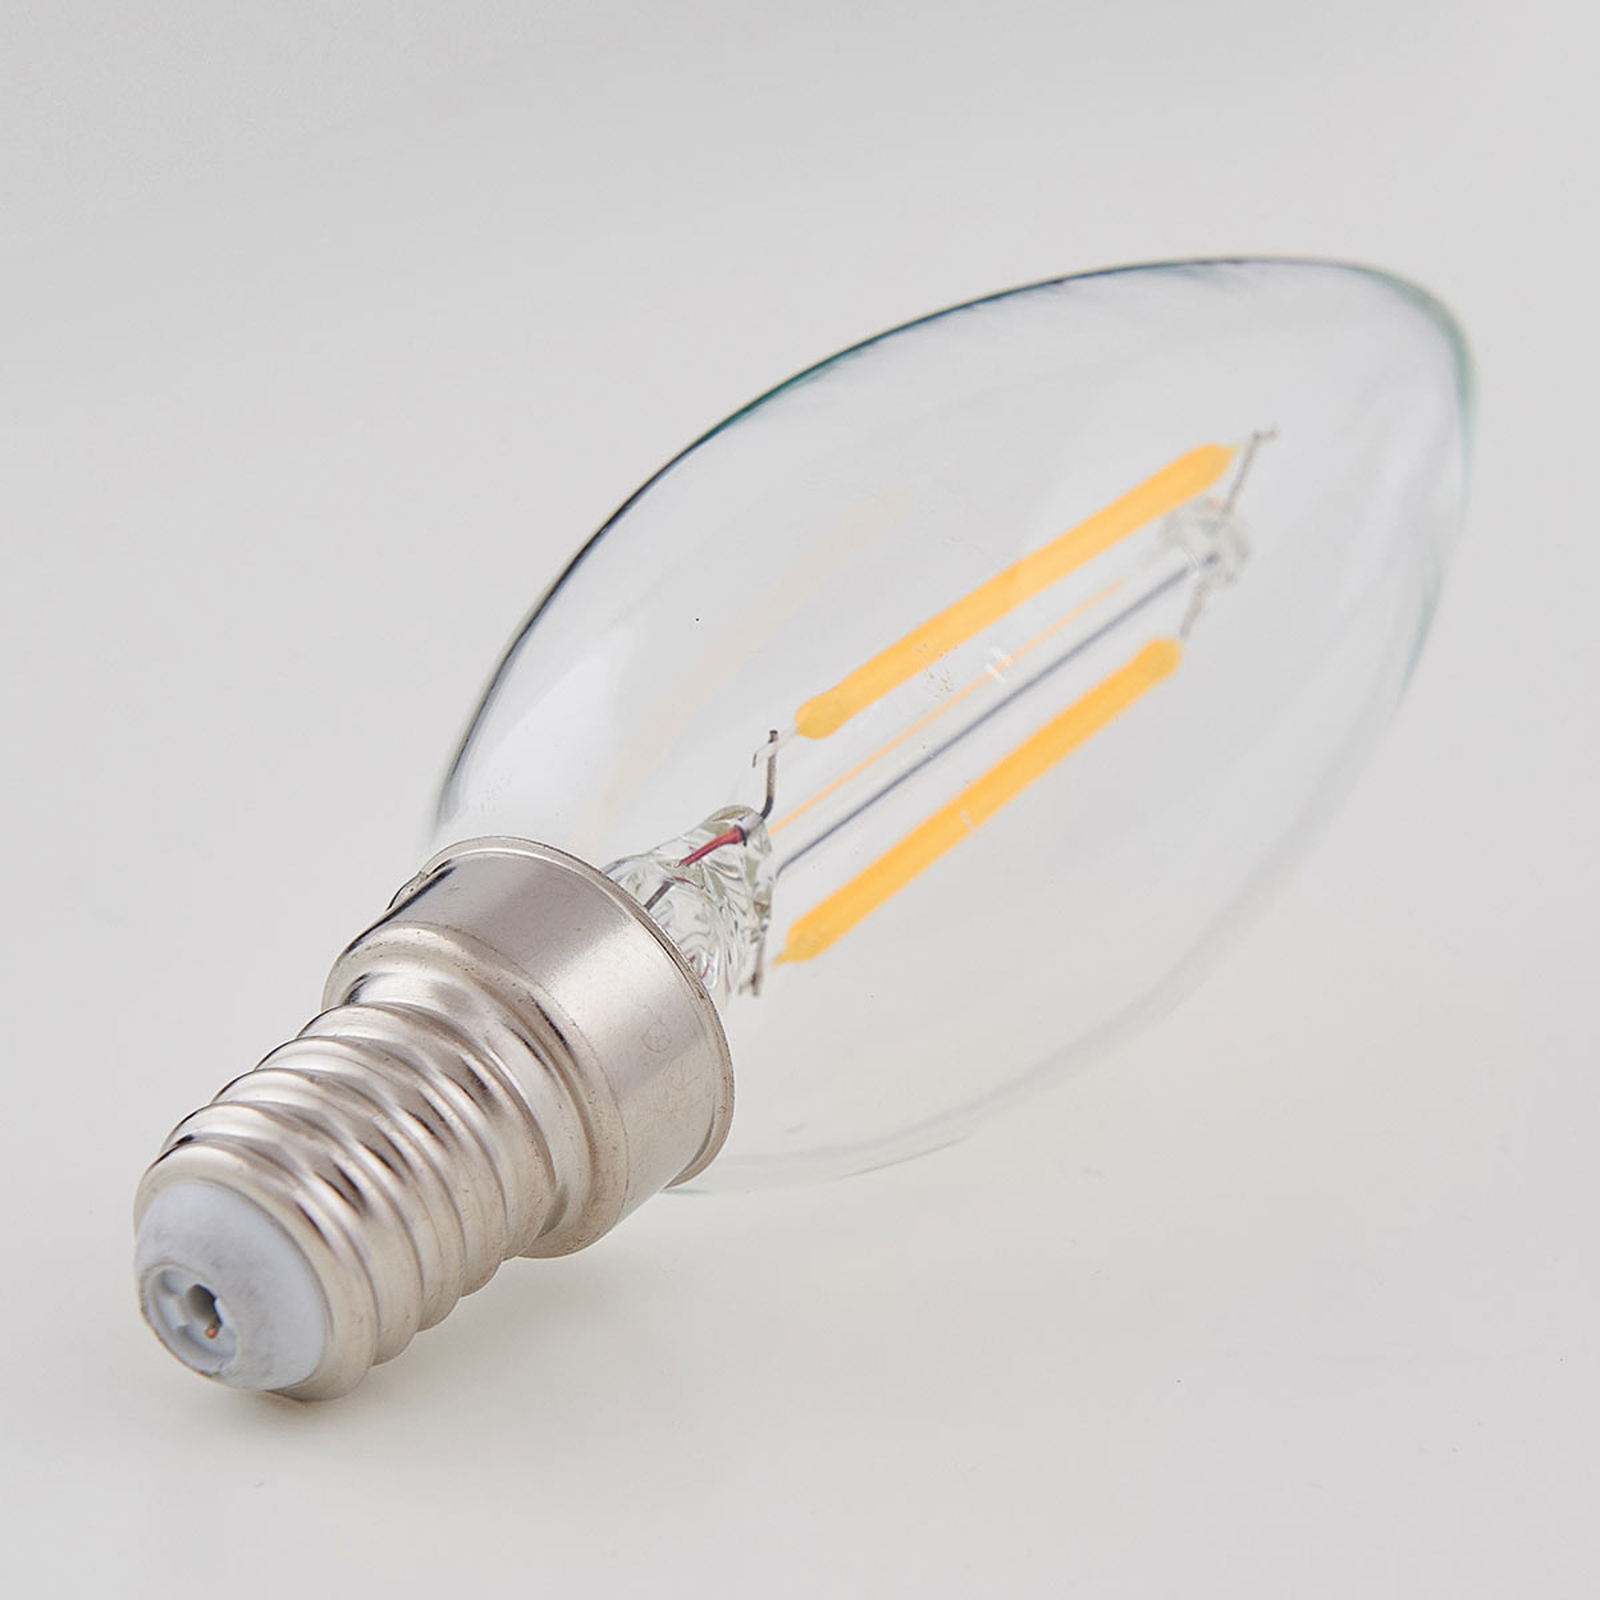 E14 LED-Kerzenlampe Filament 2W, klar, 2.700 K